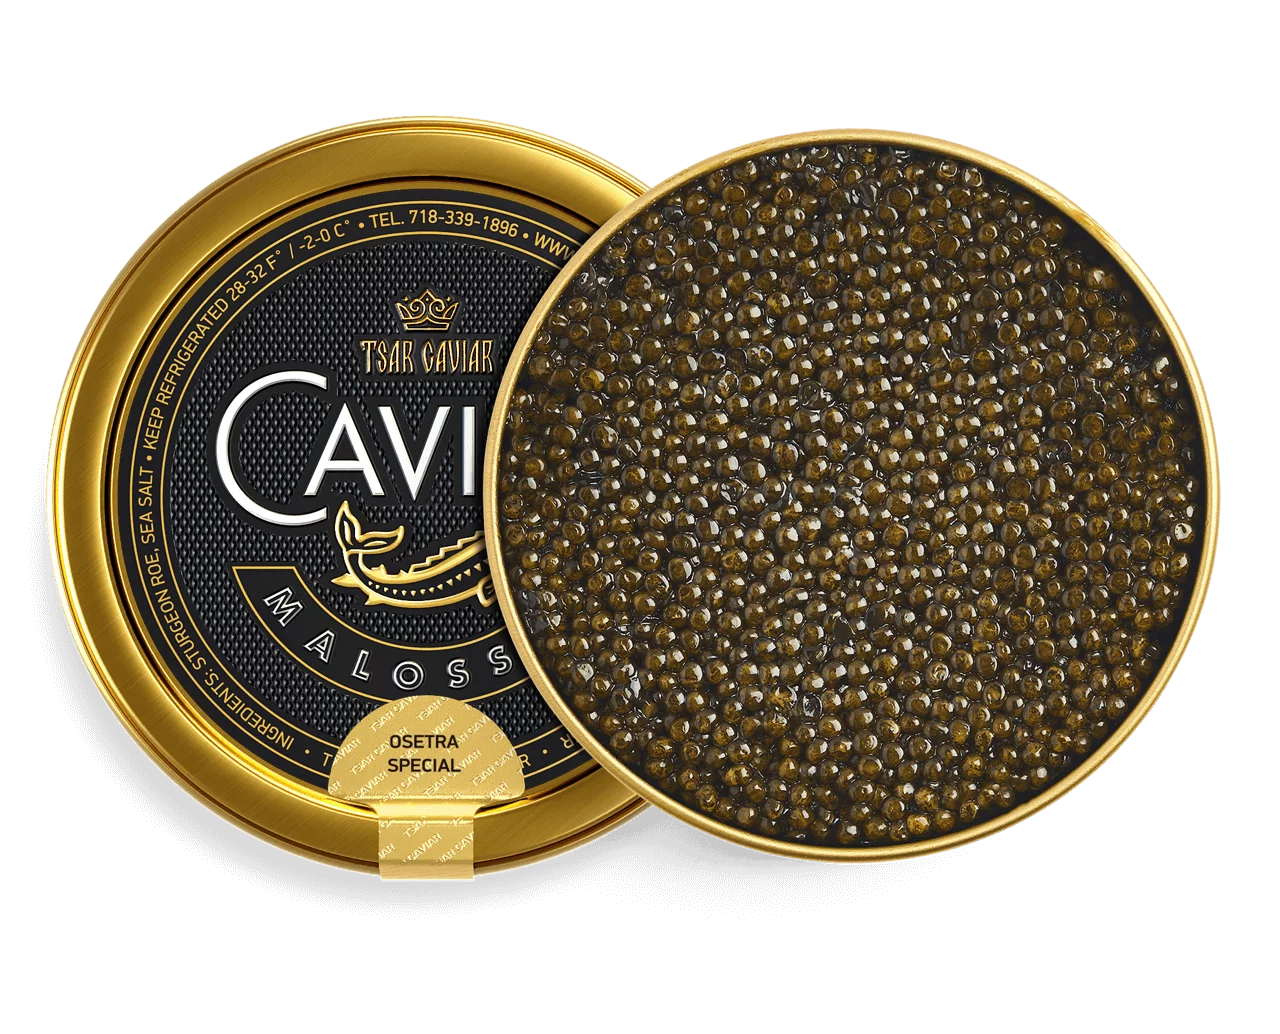 Osetra Special Caviar – Tsar Caviar